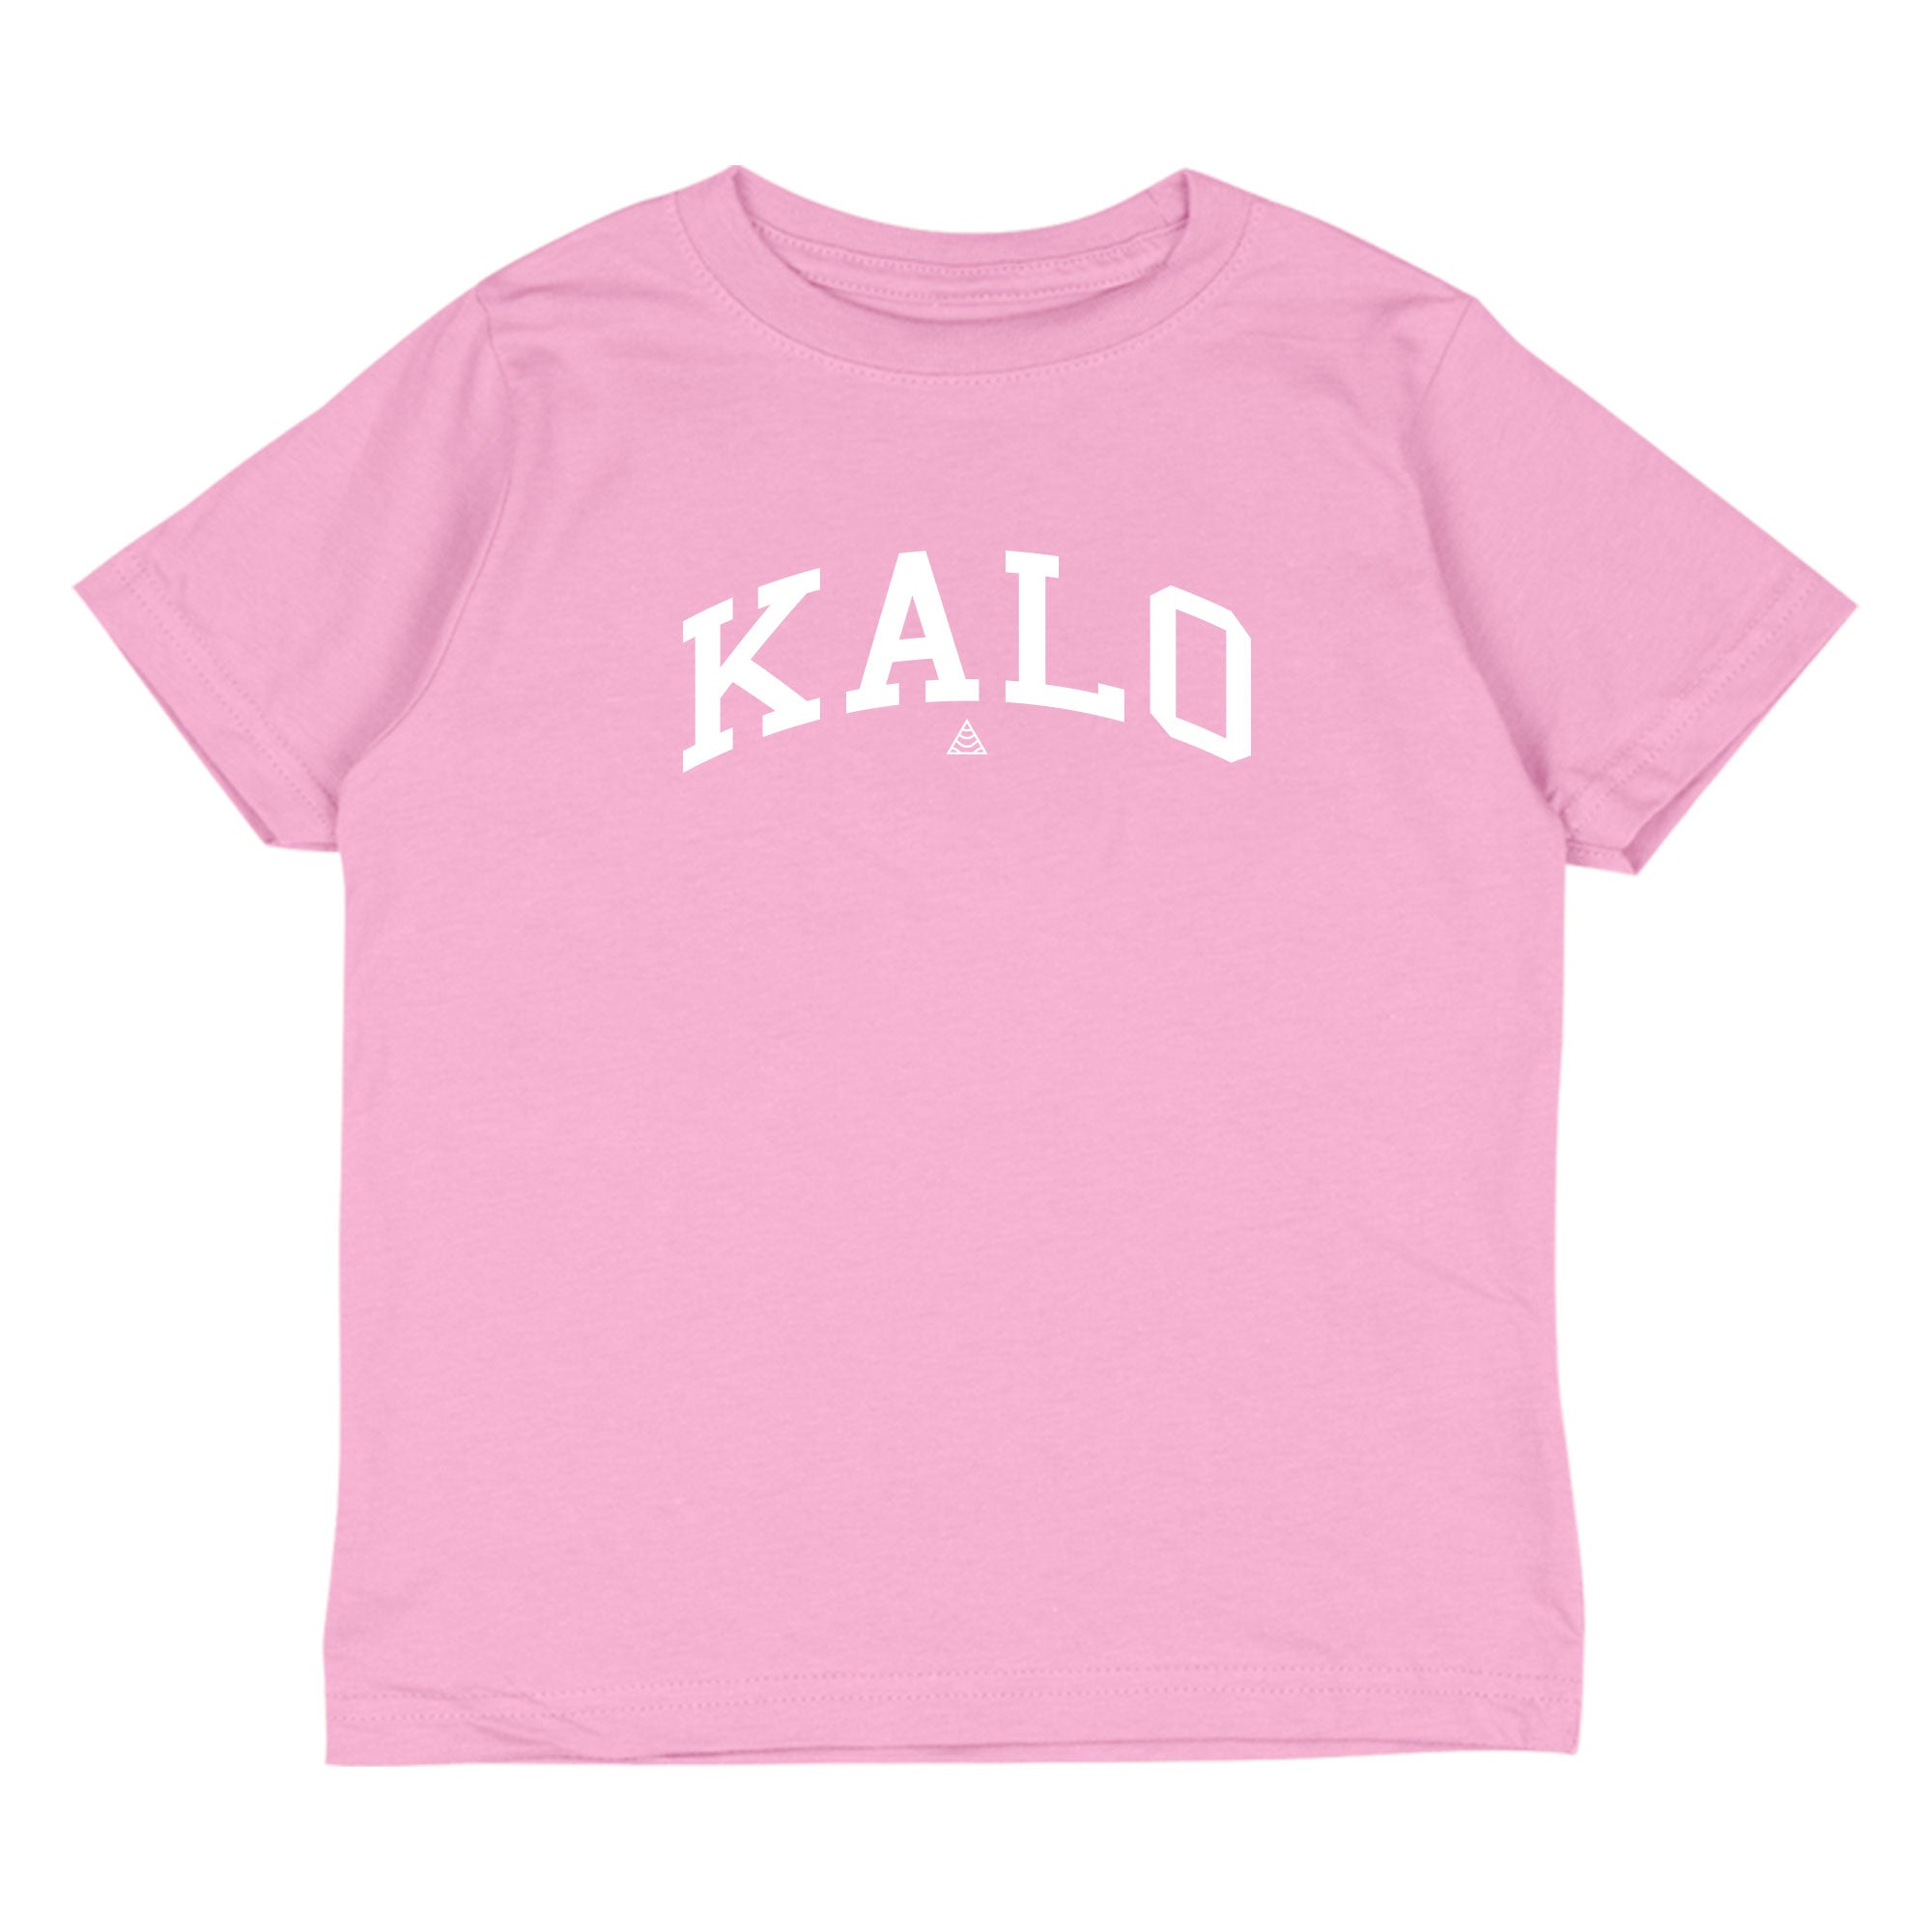 KIDS KALO Tee - Pink